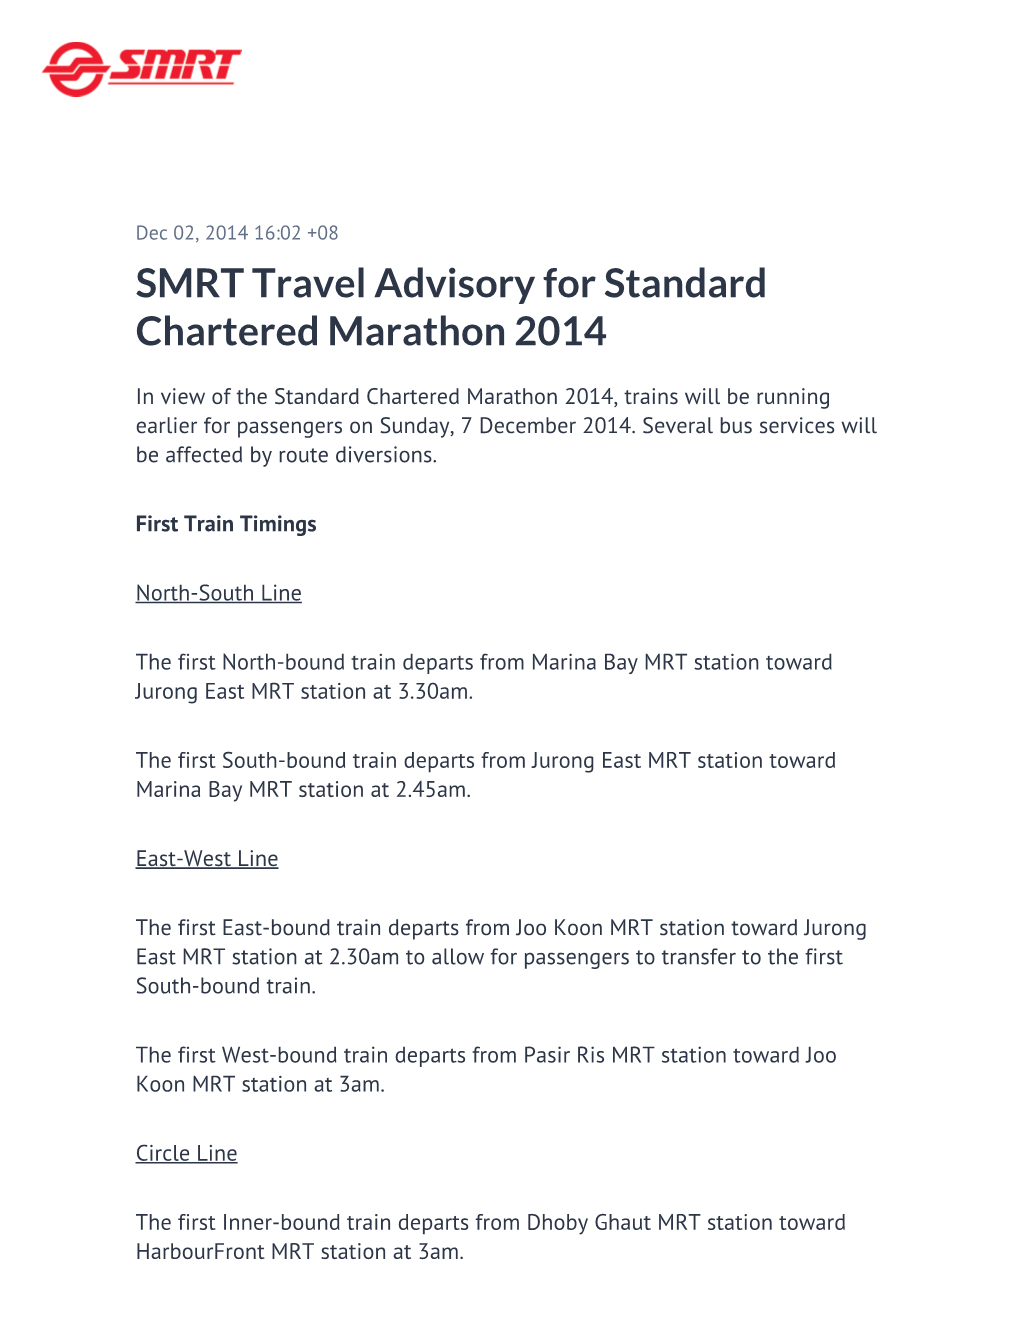 SMRT Travel Advisory for Standard Chartered Marathon 2014